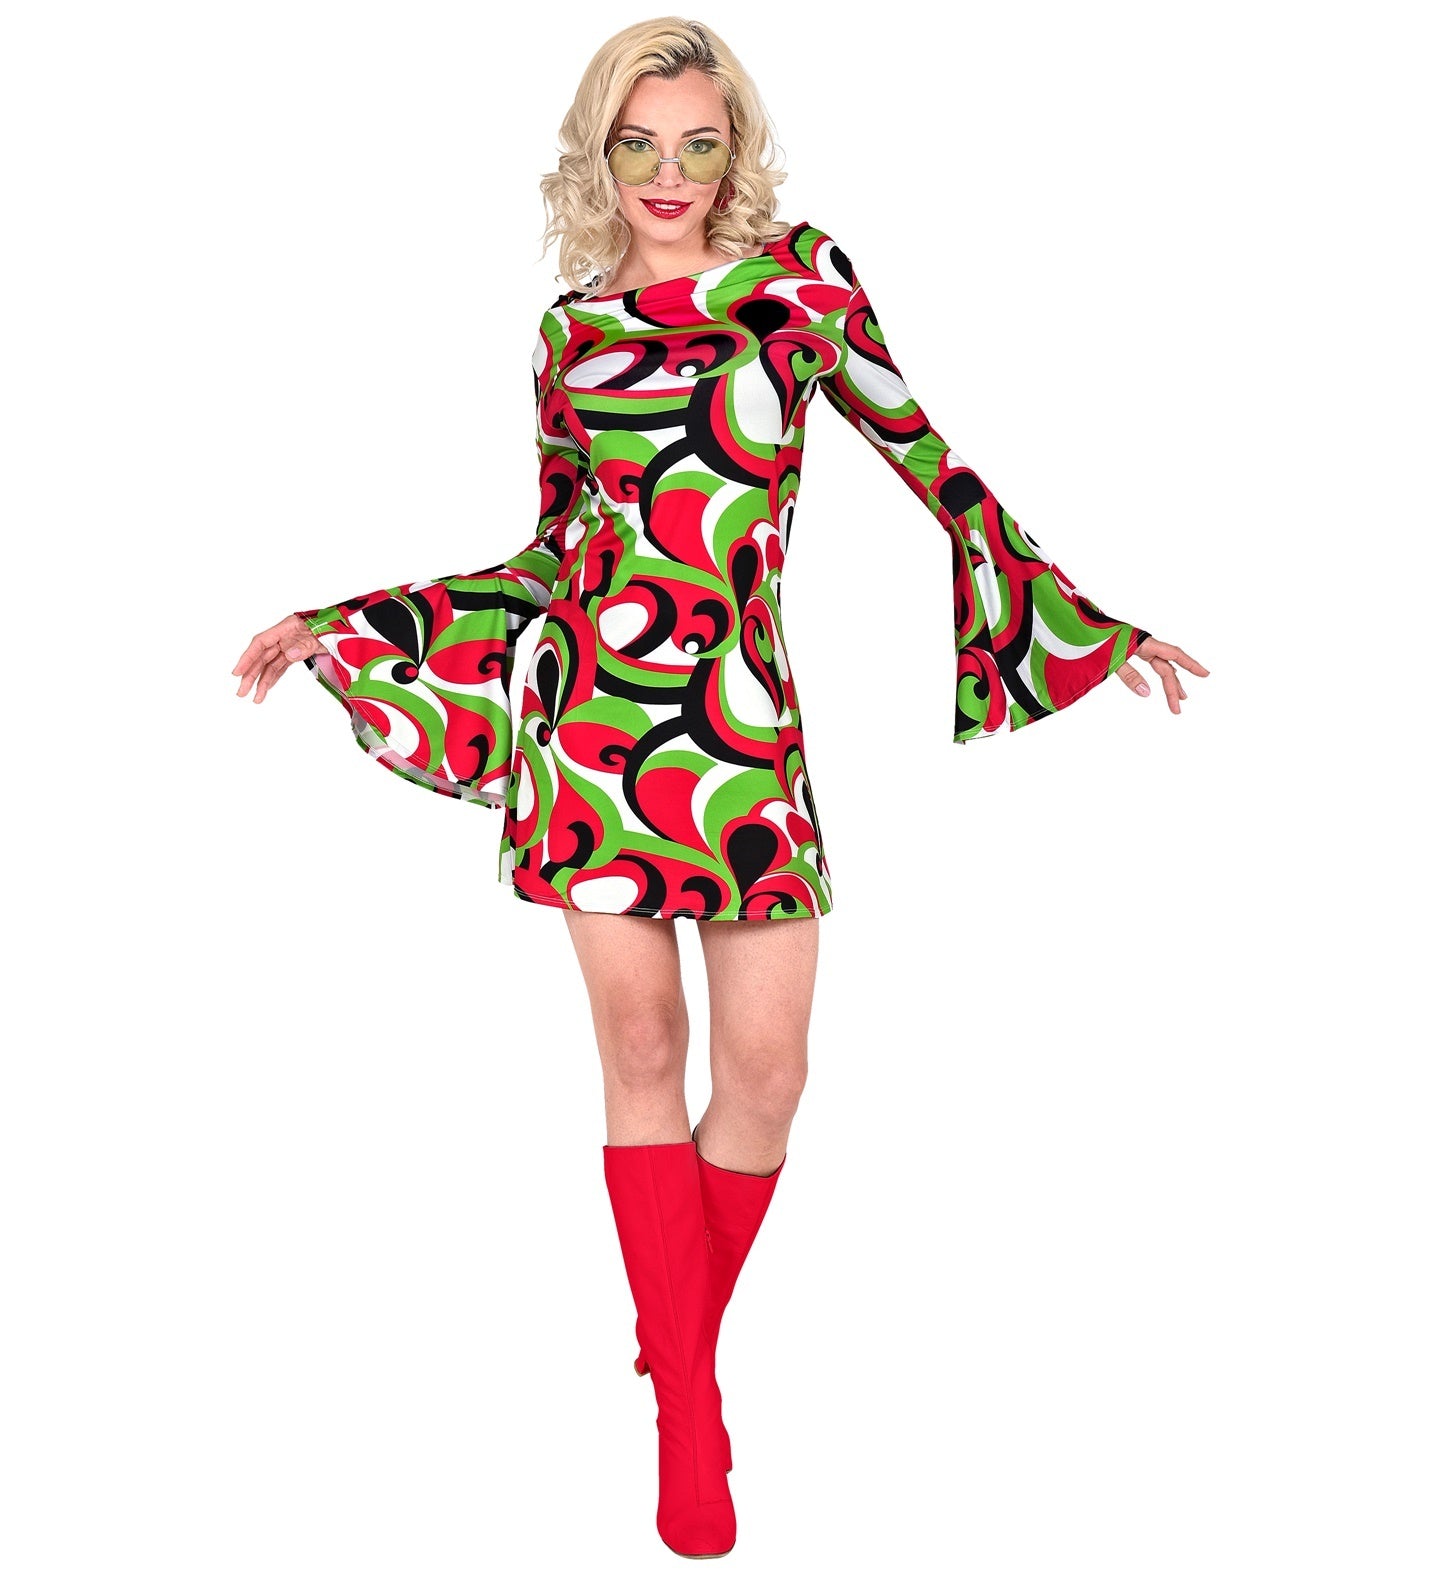 Widmann - Hippie Kostuum - Miss Seventies Jurk Vrouw - rood,groen - Large - Carnavalskleding - Verkleedkleding